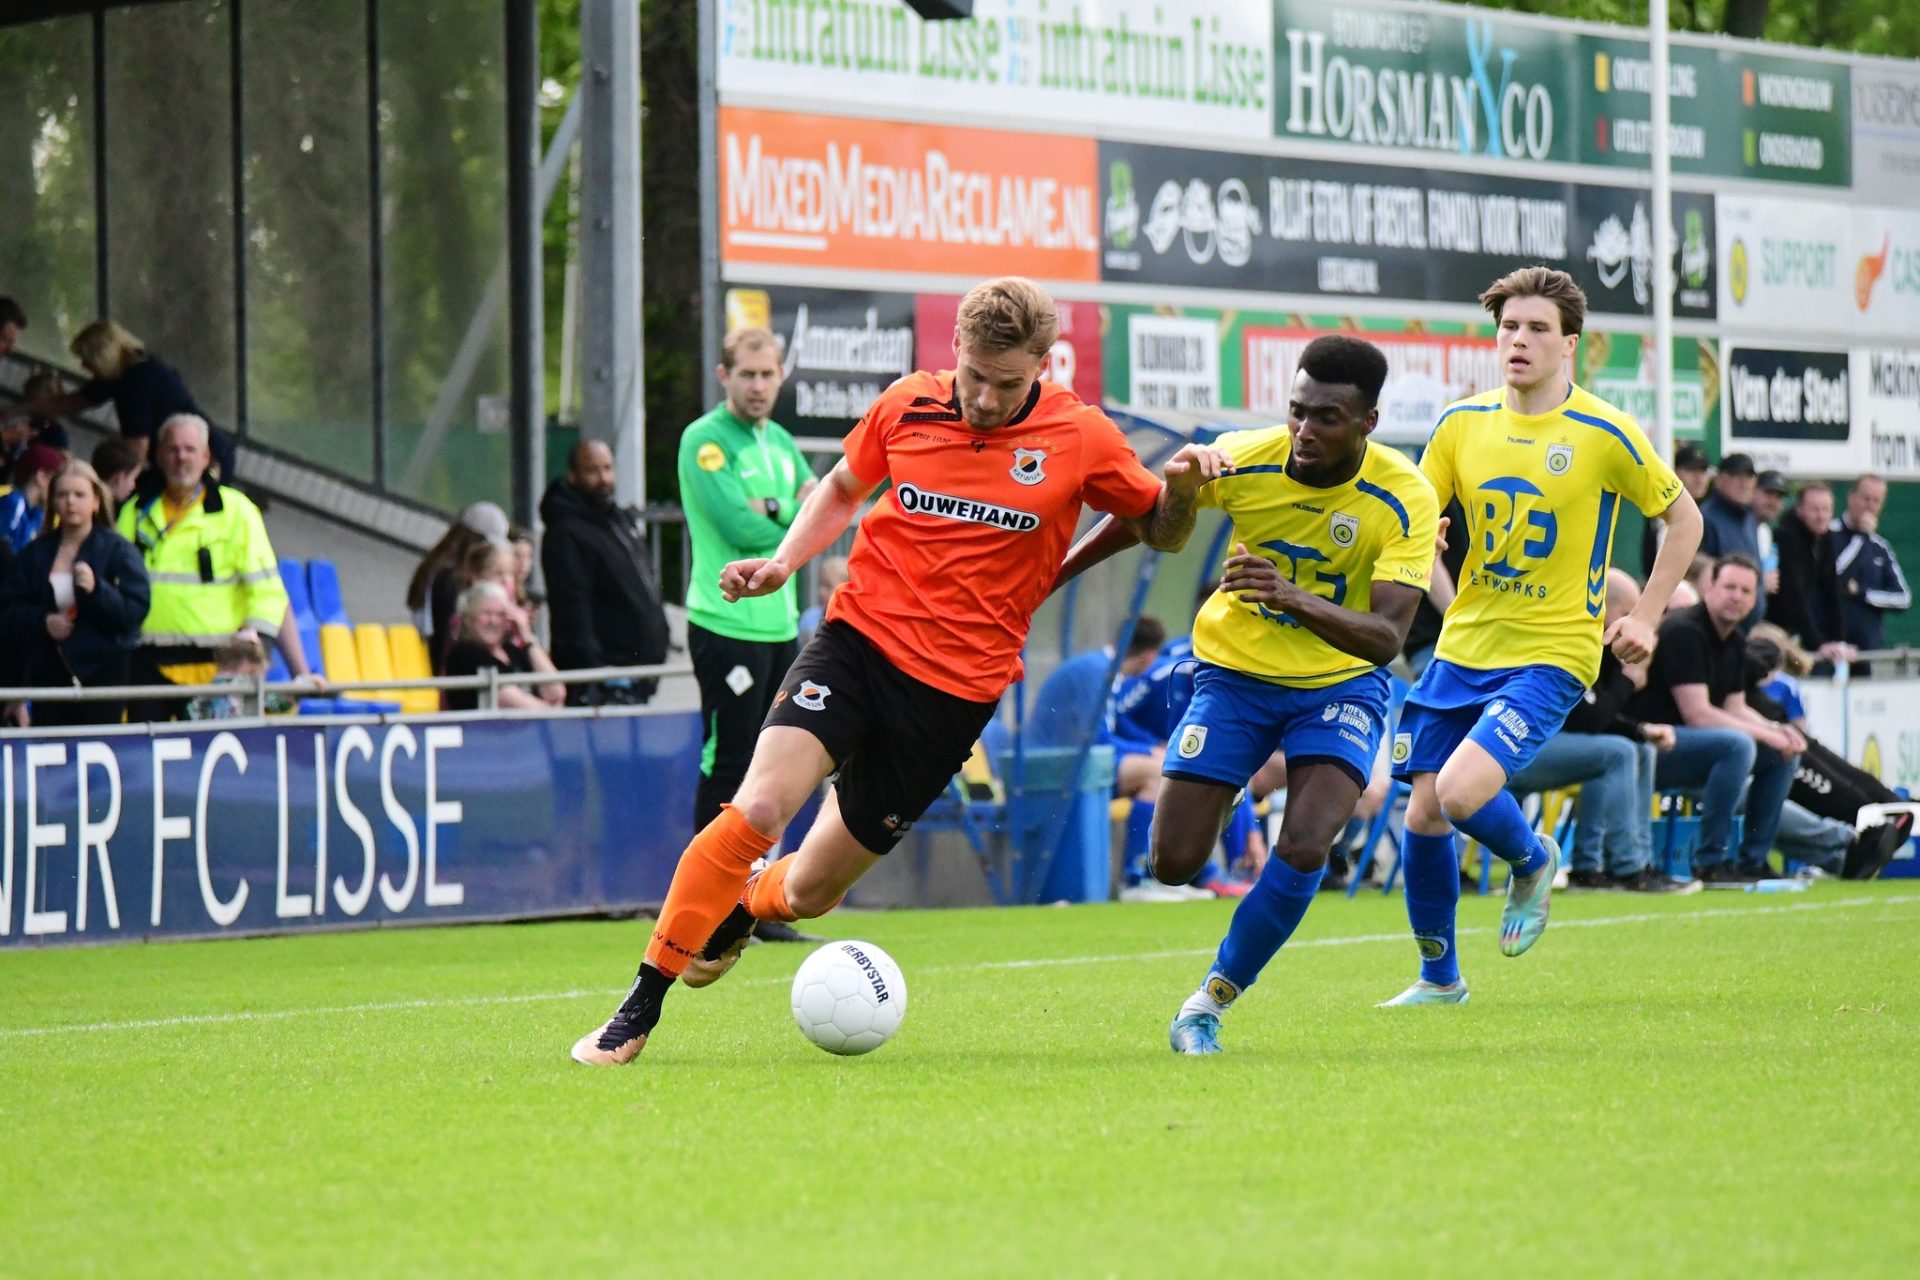 Online tickets voor de wedstrijd FC Lisse – vv Katwijk dinsdag 16 janauri